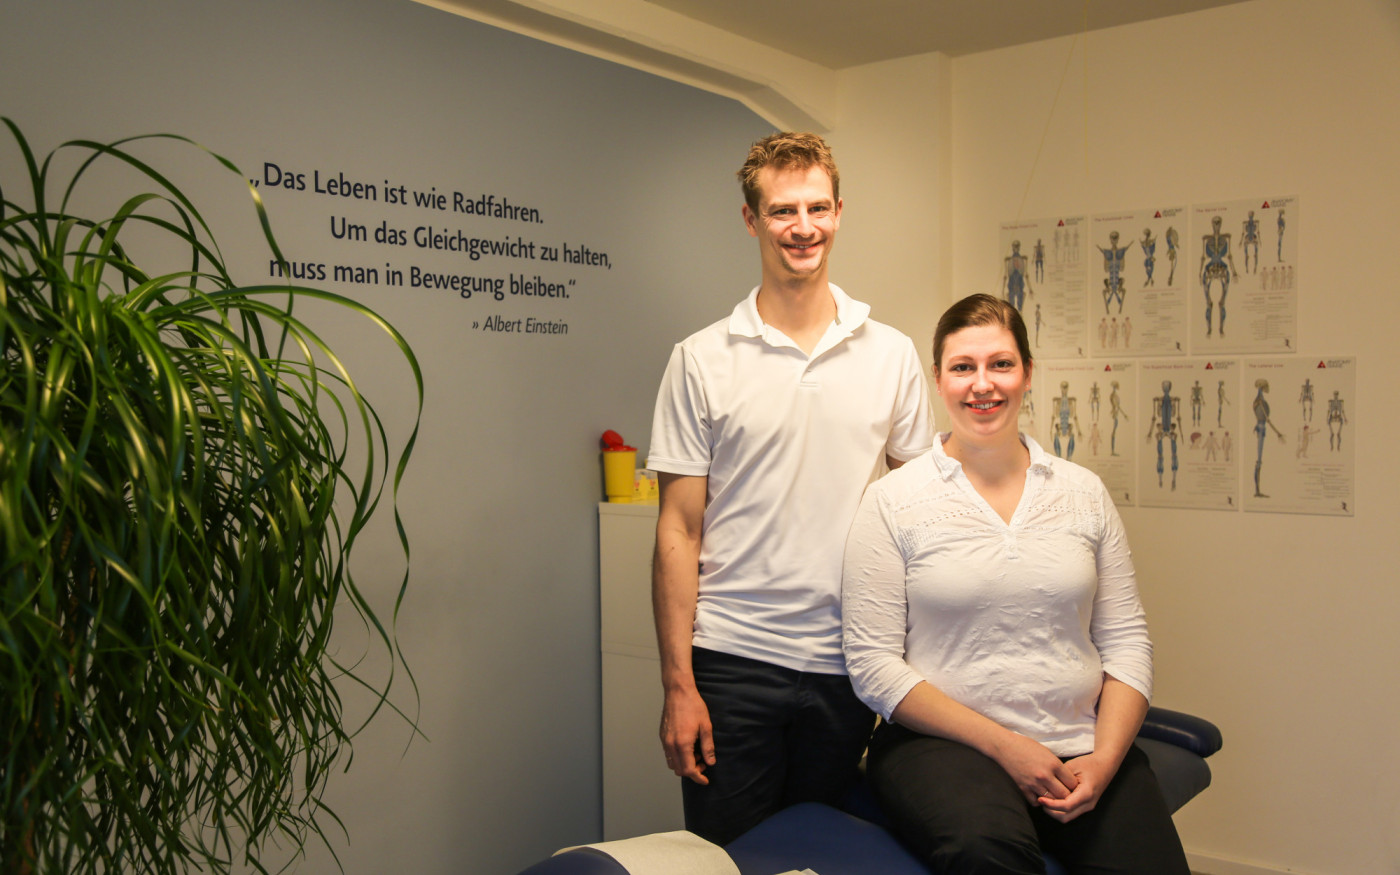 Die Zahnräder des Körpers: So läuft‘s wie geschmiert - Johanna und Lasse Tietje führen die Praxis für funktionelle Chiropraktik in Gifhorn